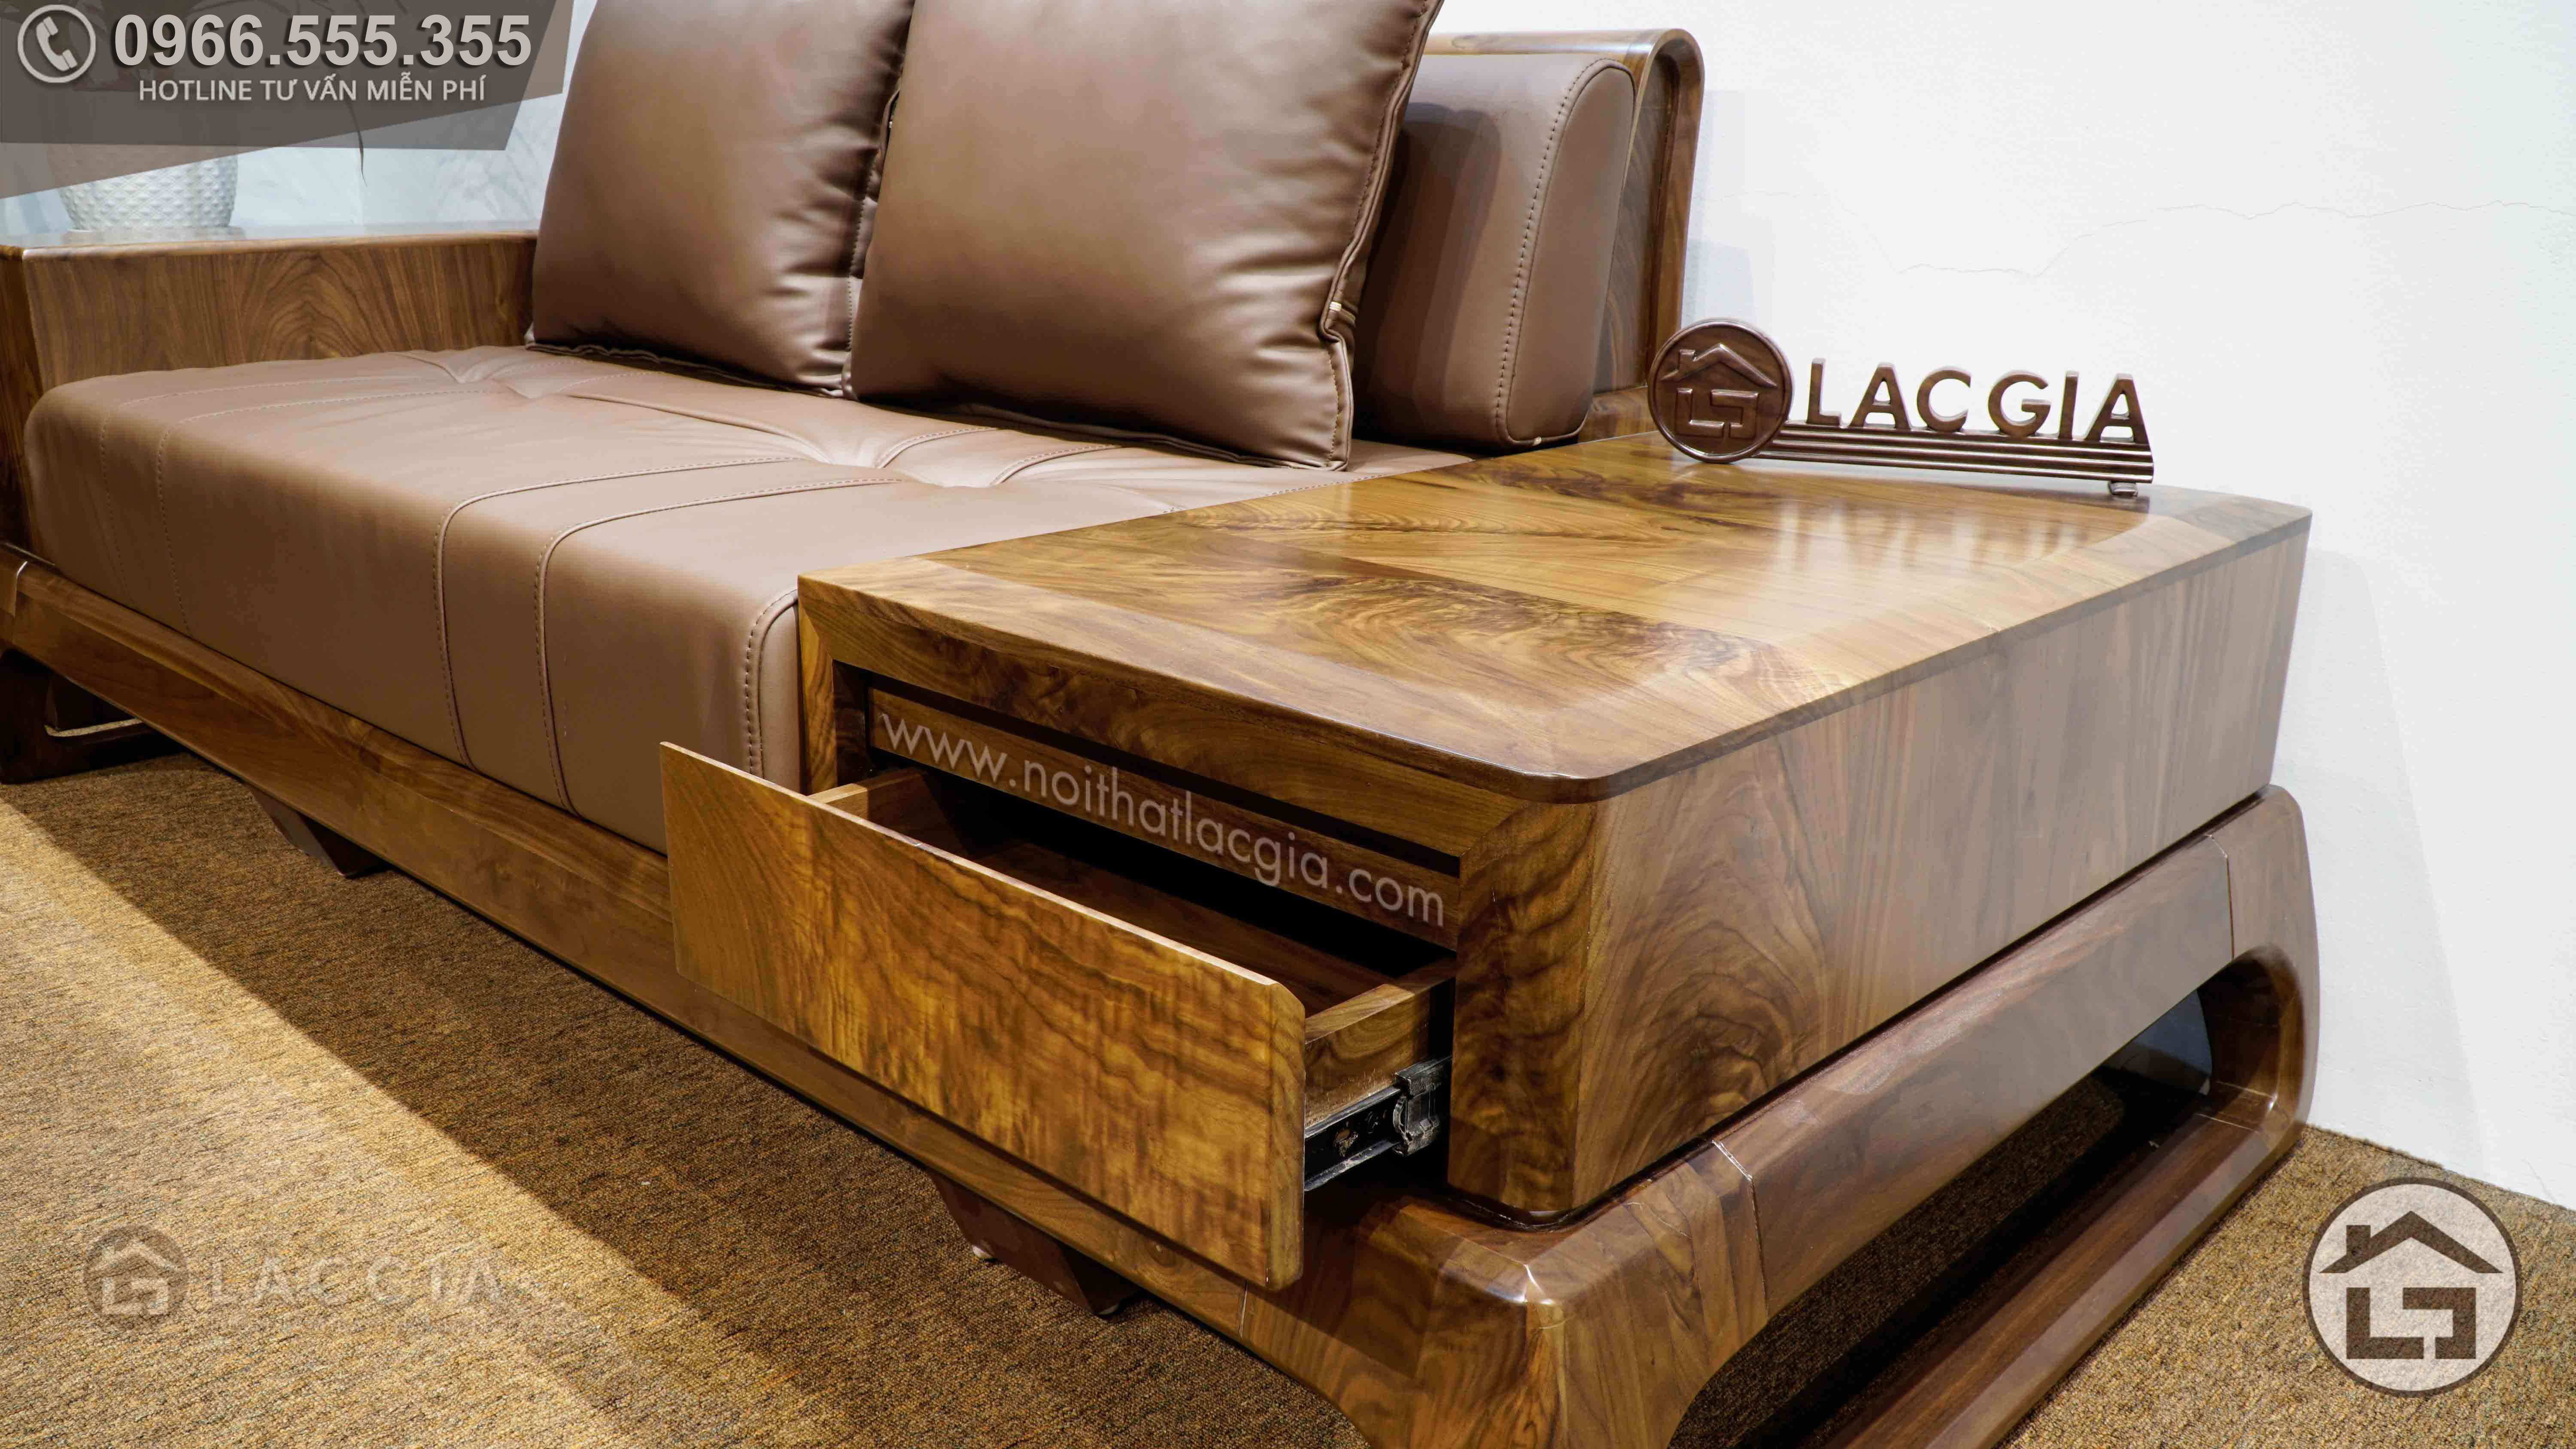 Sofa gỗ chữ L thông tin: Sofa gỗ chữ L thông tin đã được cải tiến với công nghệ tiên tiến nhất để mang lại cho bạn một trải nghiệm thật tuyệt vời. Với chất liệu gỗ và đệm cao cấp, chiếc sofa này sẽ giúp bạn thư giãn và tận hưởng những khoảnh khắc thật thoải mái trong không gian nhà của mình. Hãy để chiếc sofa gỗ chữ L thông tin giúp bạn có một cuộc sống an yên và hạnh phúc.